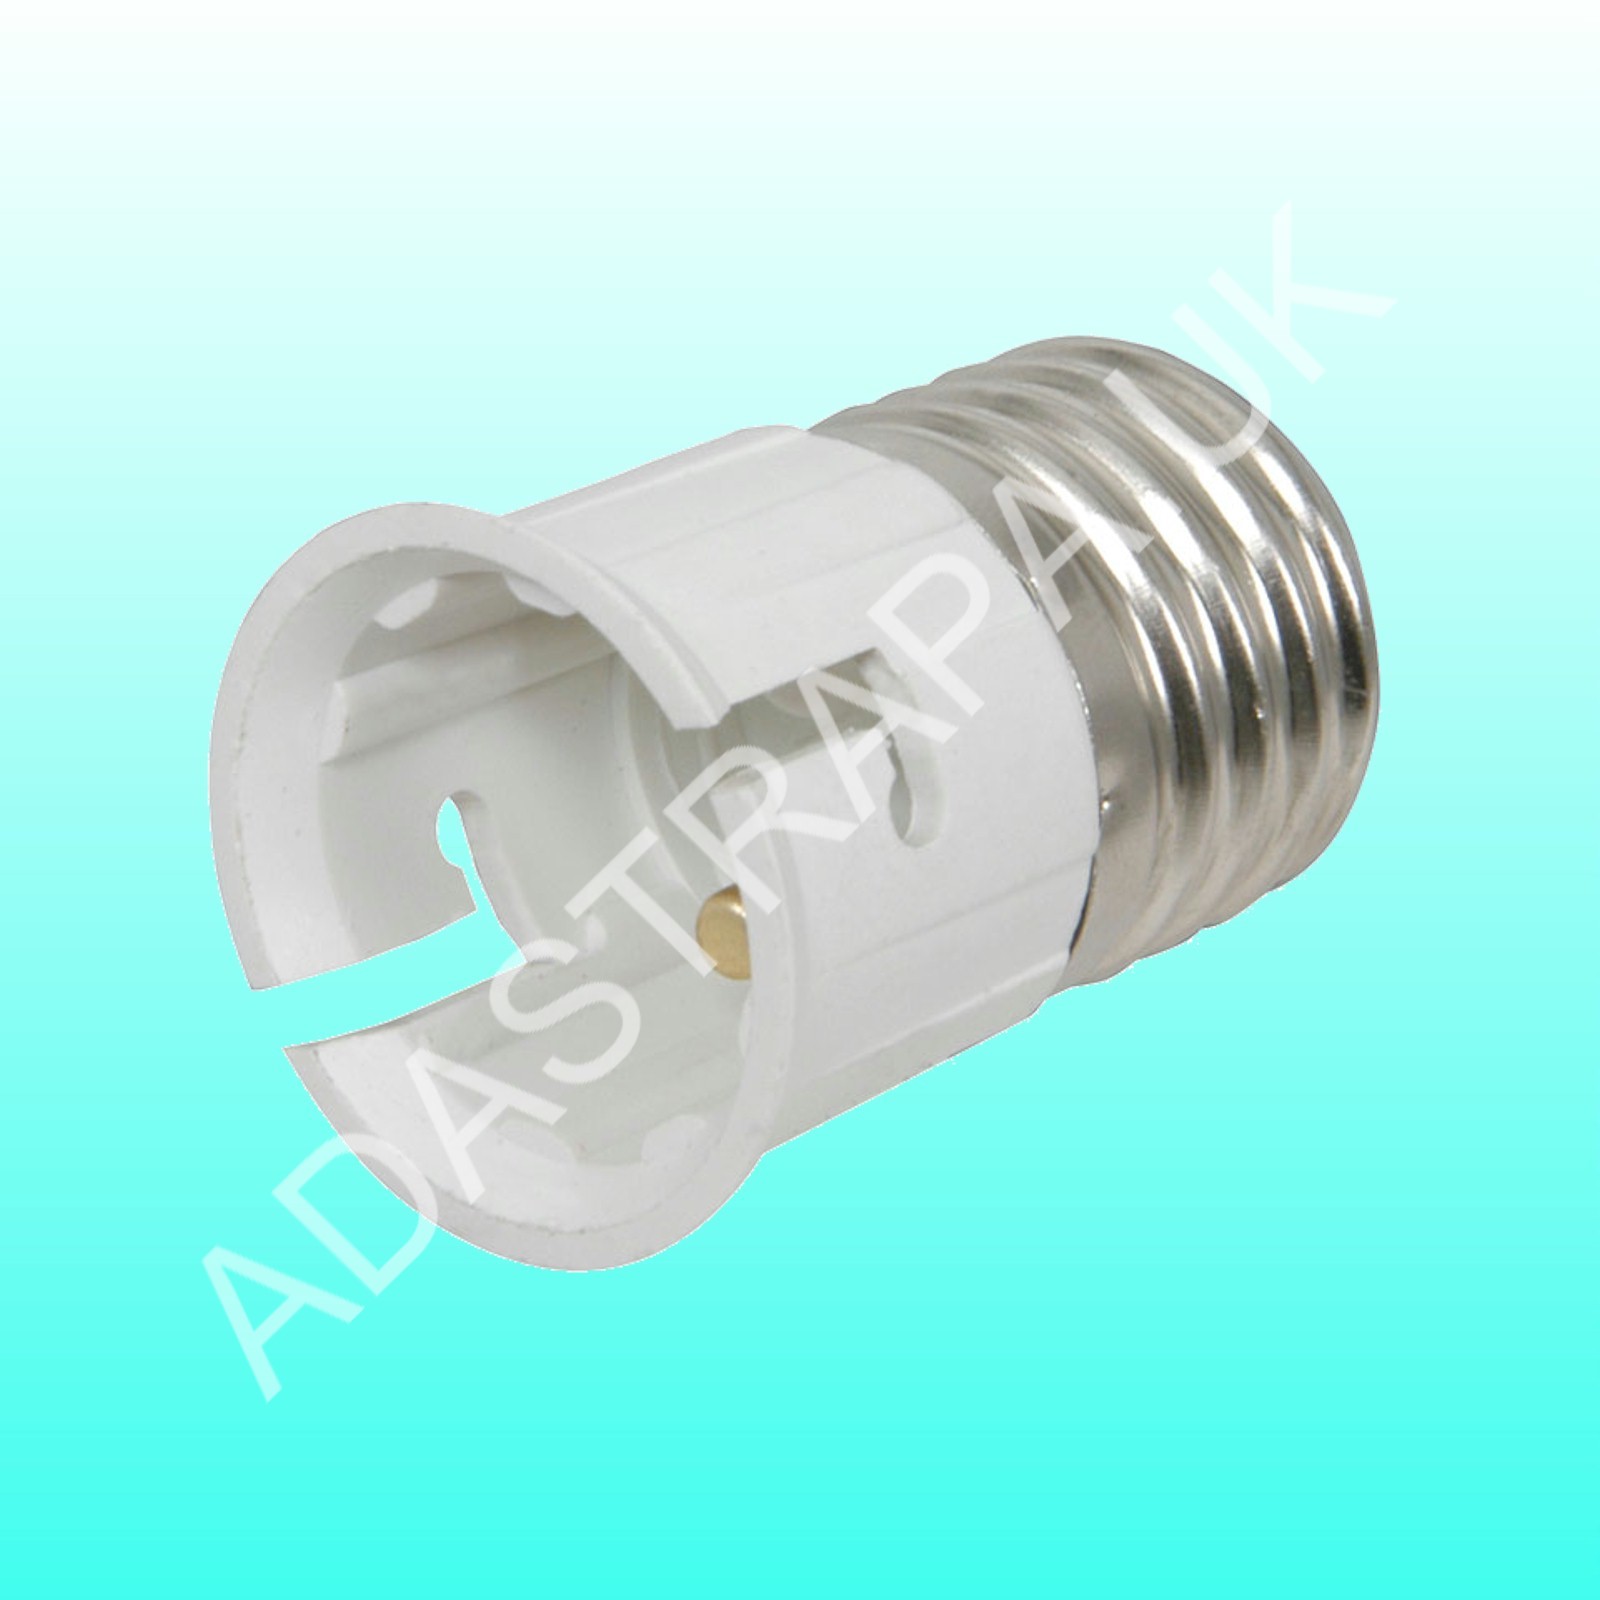 Lyyt 401.087UK Lamp Socket Converter E27 - B22 - 401.087UK